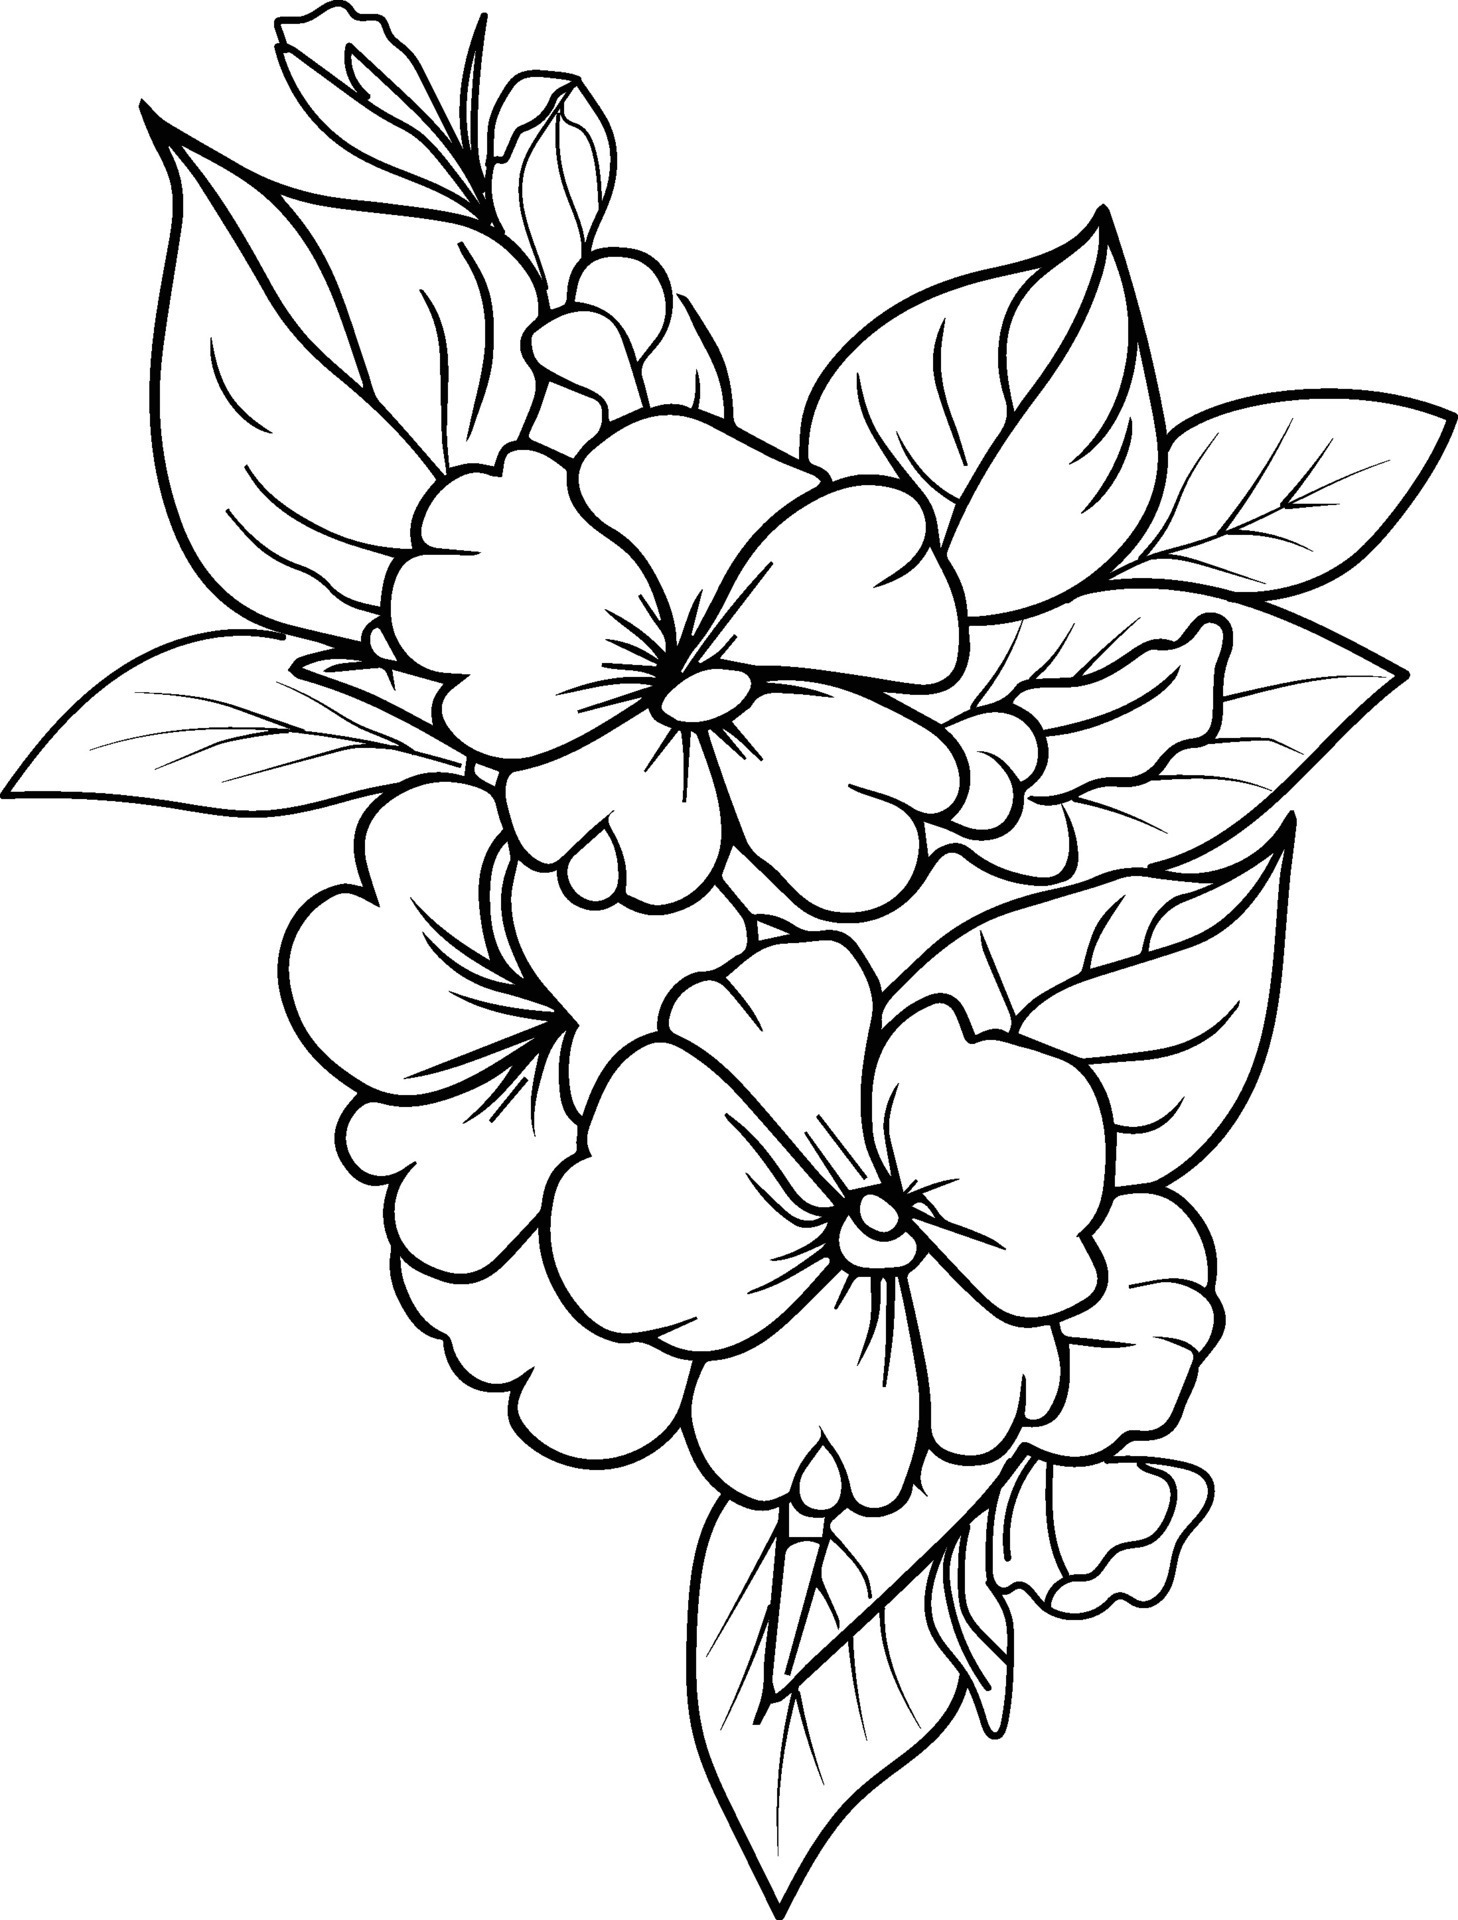 Desenho à mão de uma flor - Flores e vegetação - Coloring Pages for Adults